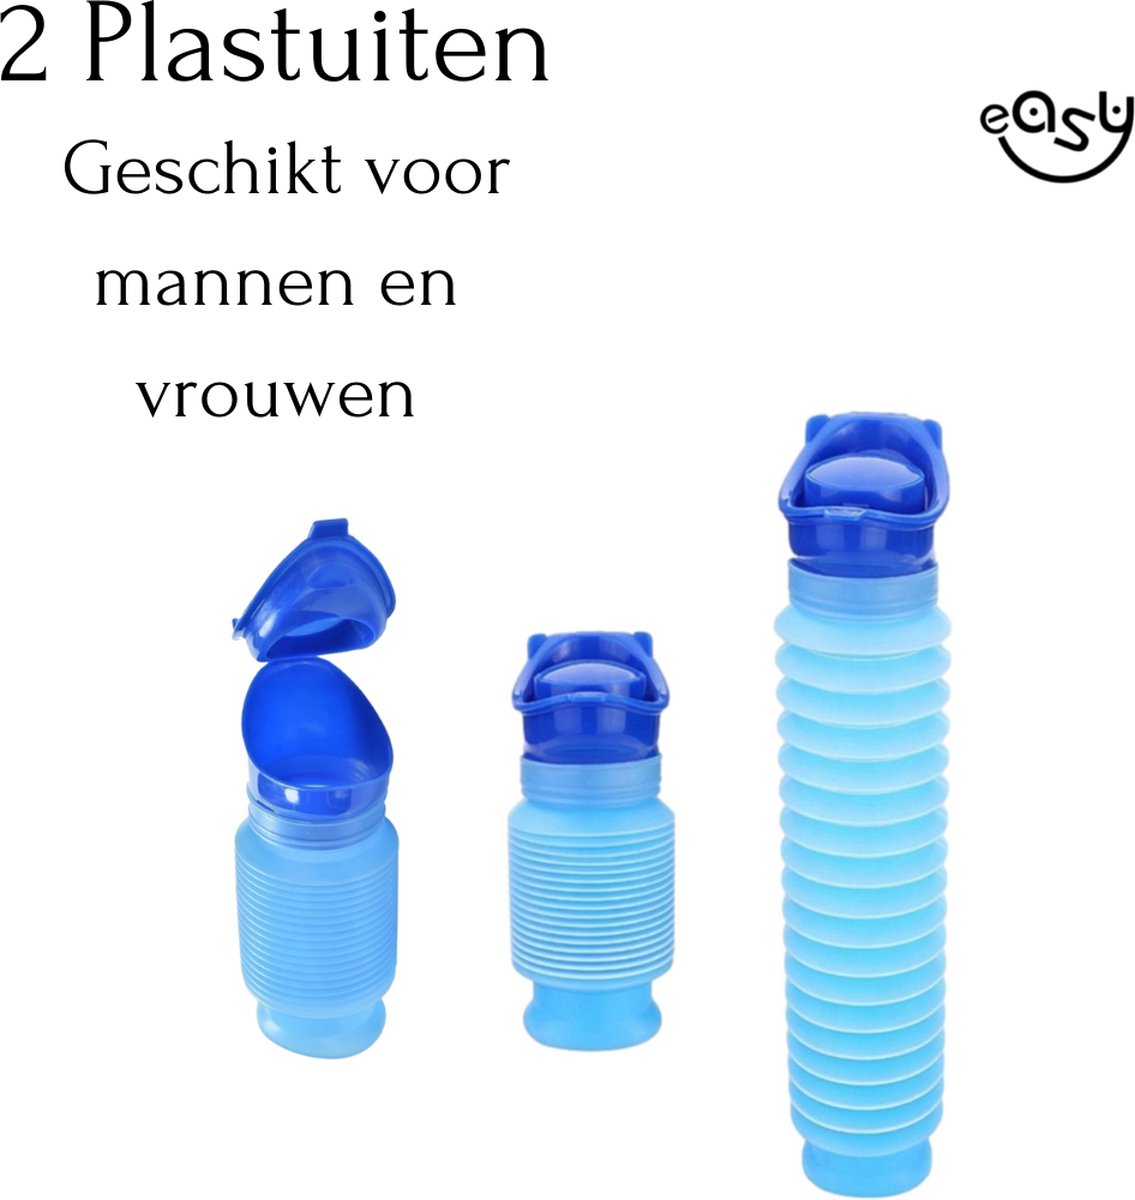 Urinoirs unisexes en plastique pour homme et femme avec bouchon à